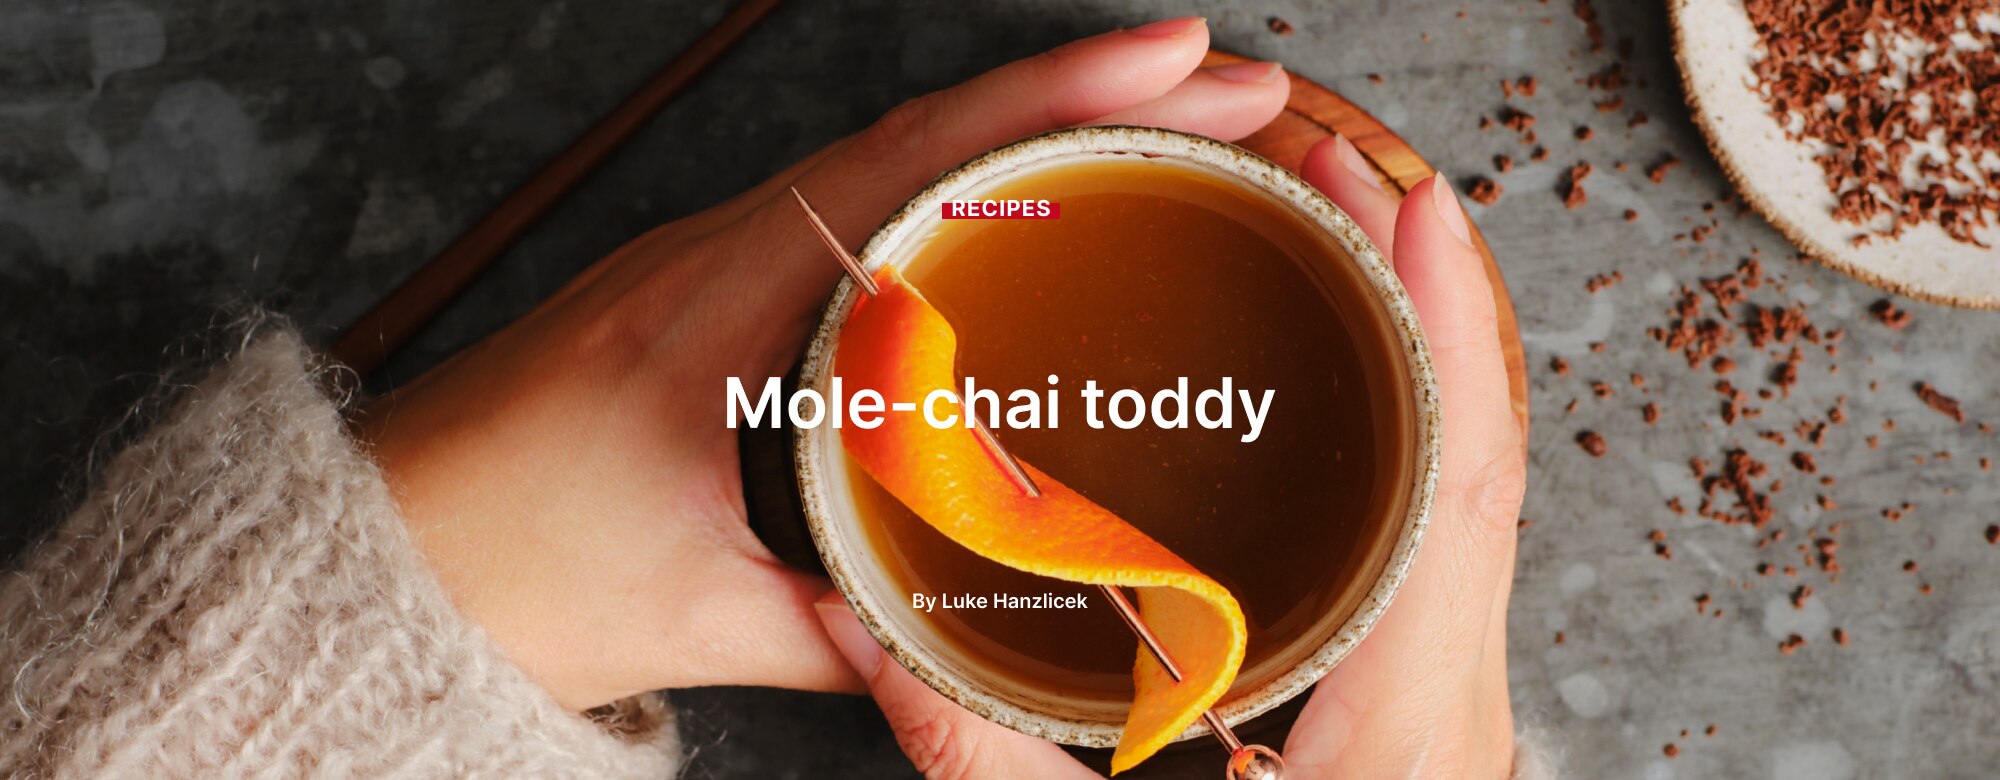 Mole-chai toddy